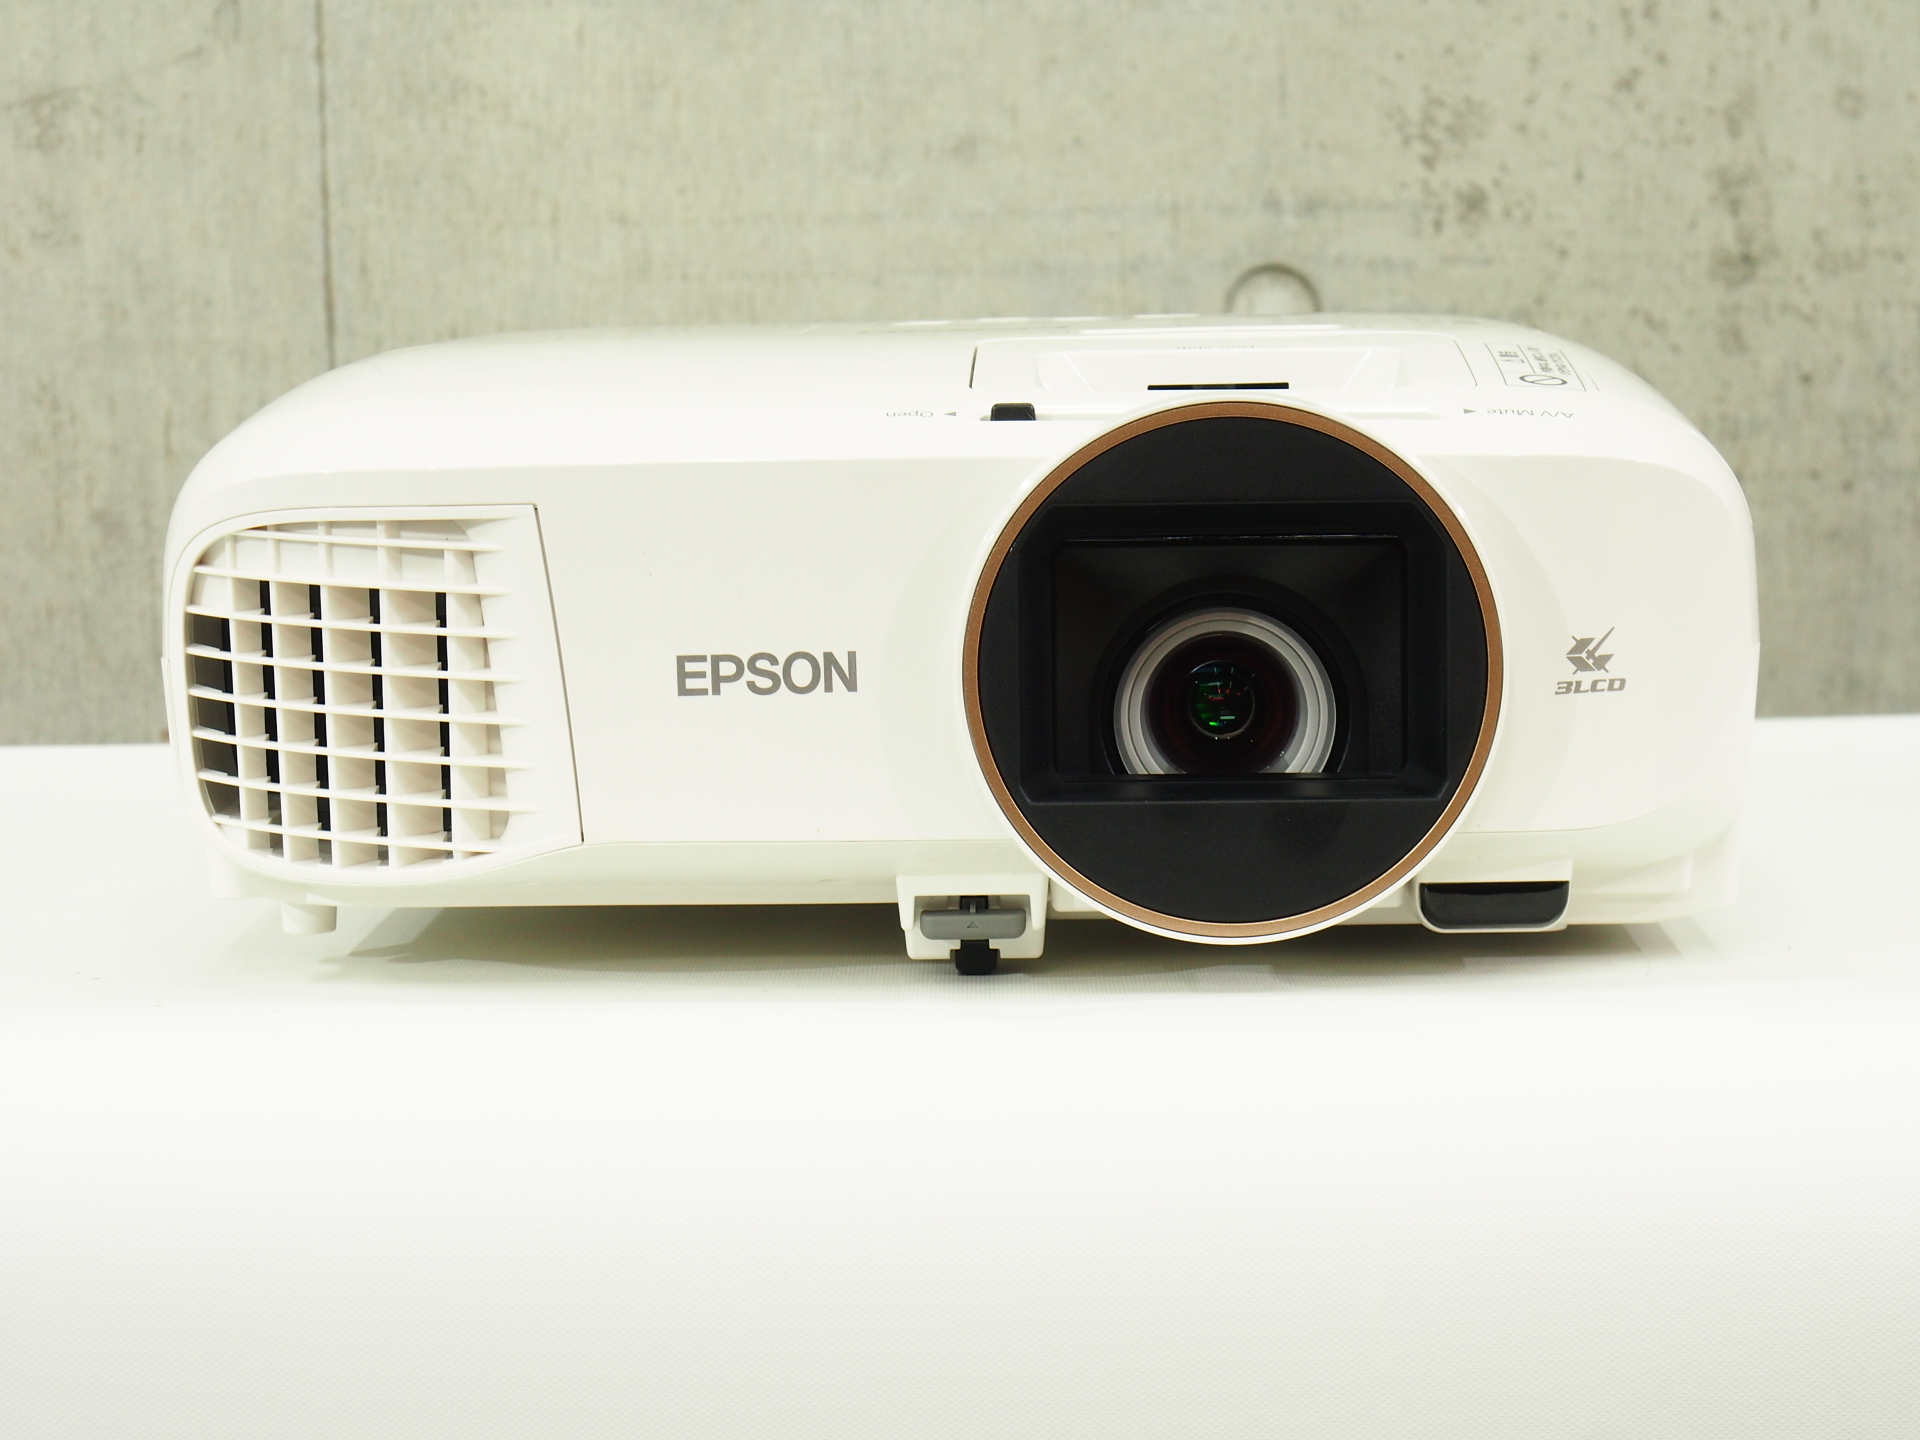 EPSON EH-TW5650 プロジェクター - テレビ/映像機器